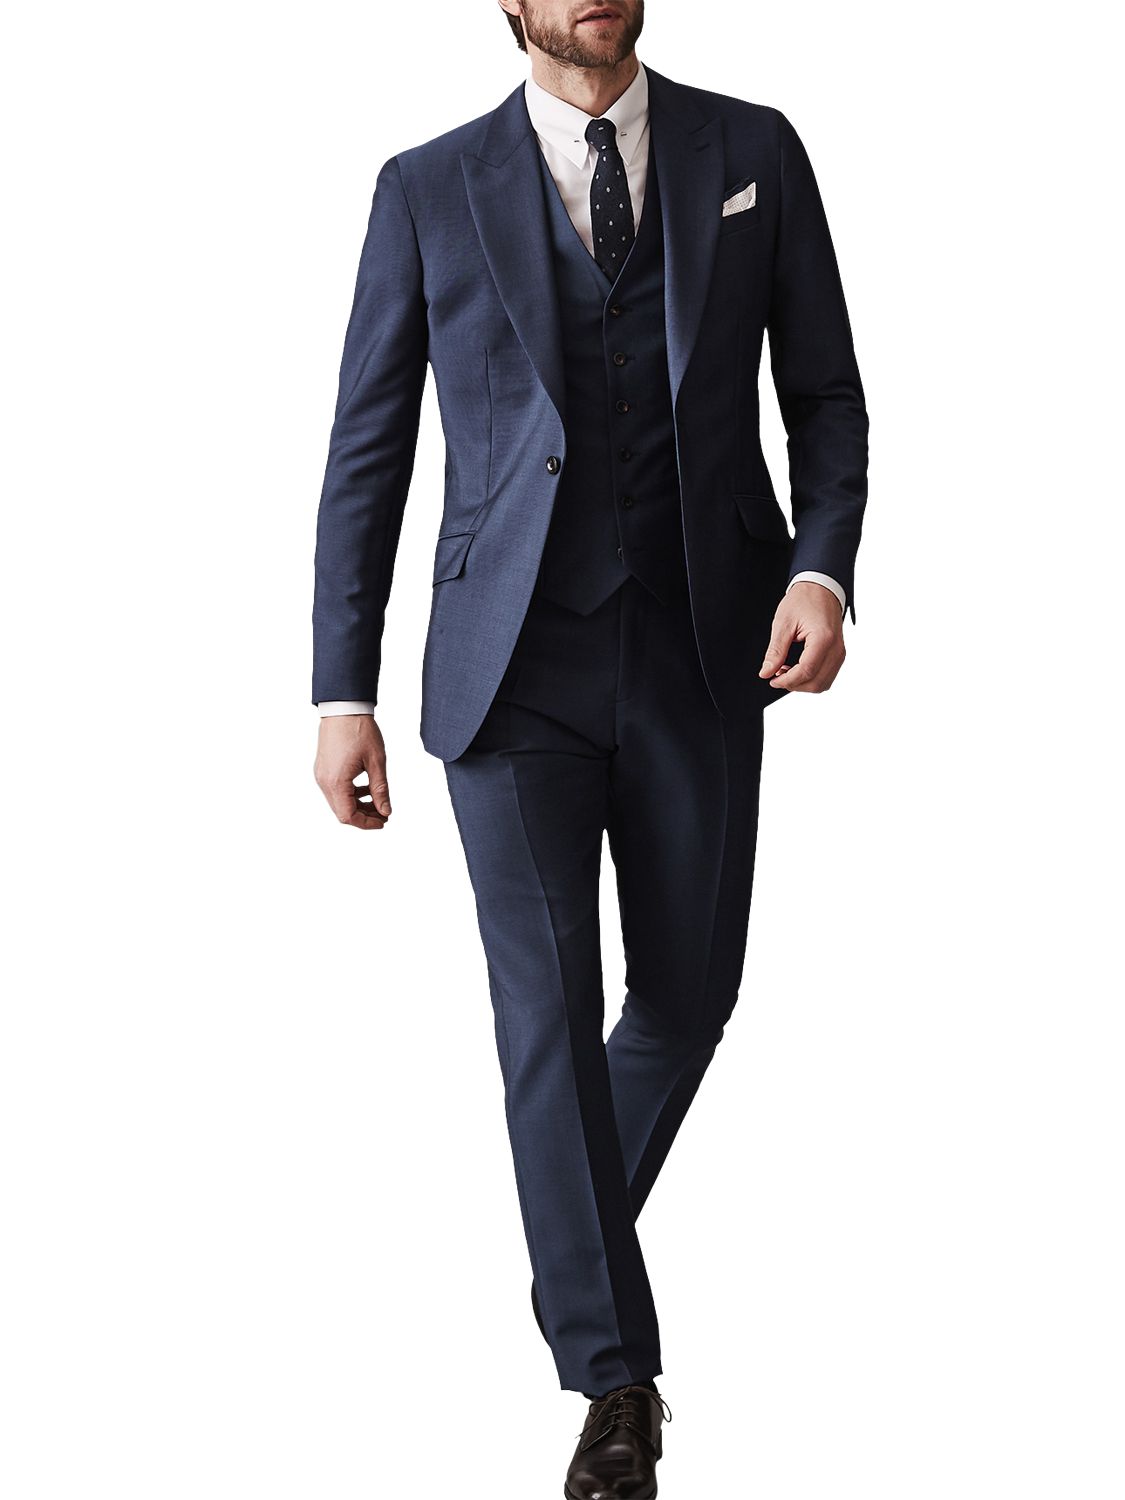 Reiss Dissolve Modern Fit Suit, Bright Blue, 36R